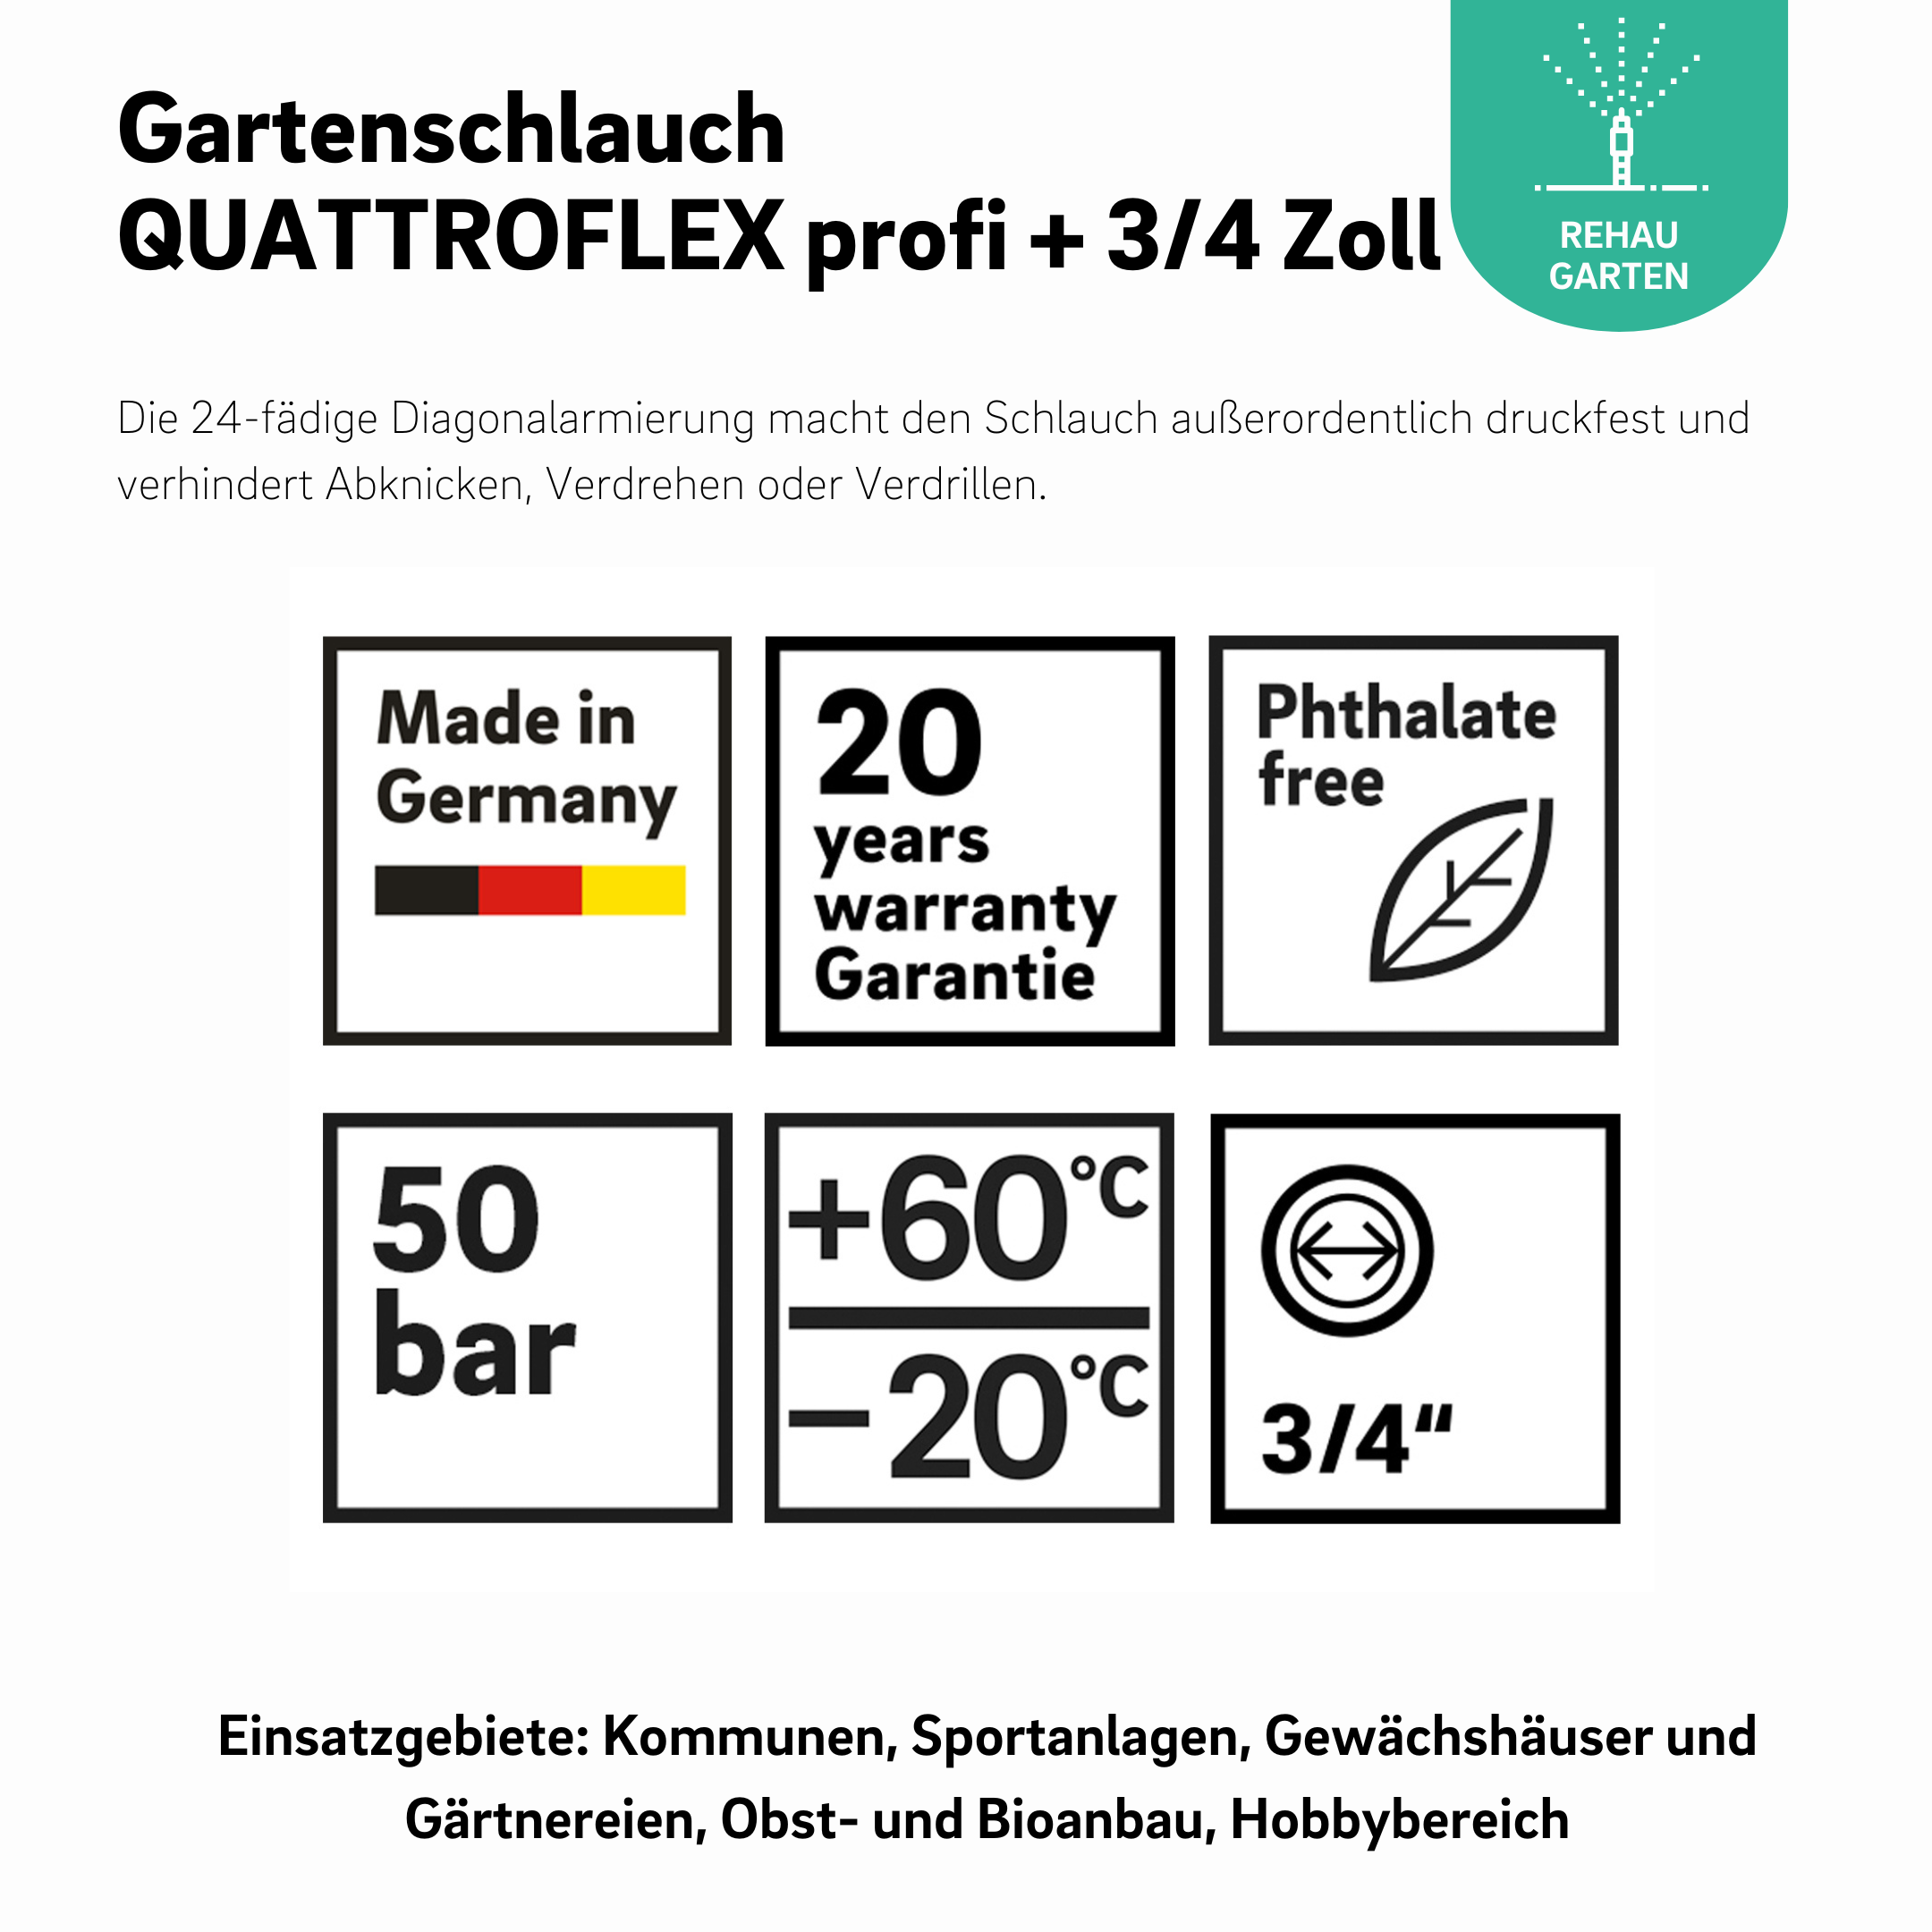 Gartenschlauch QUATTROFLEX profi + 3/4 Zoll 40m